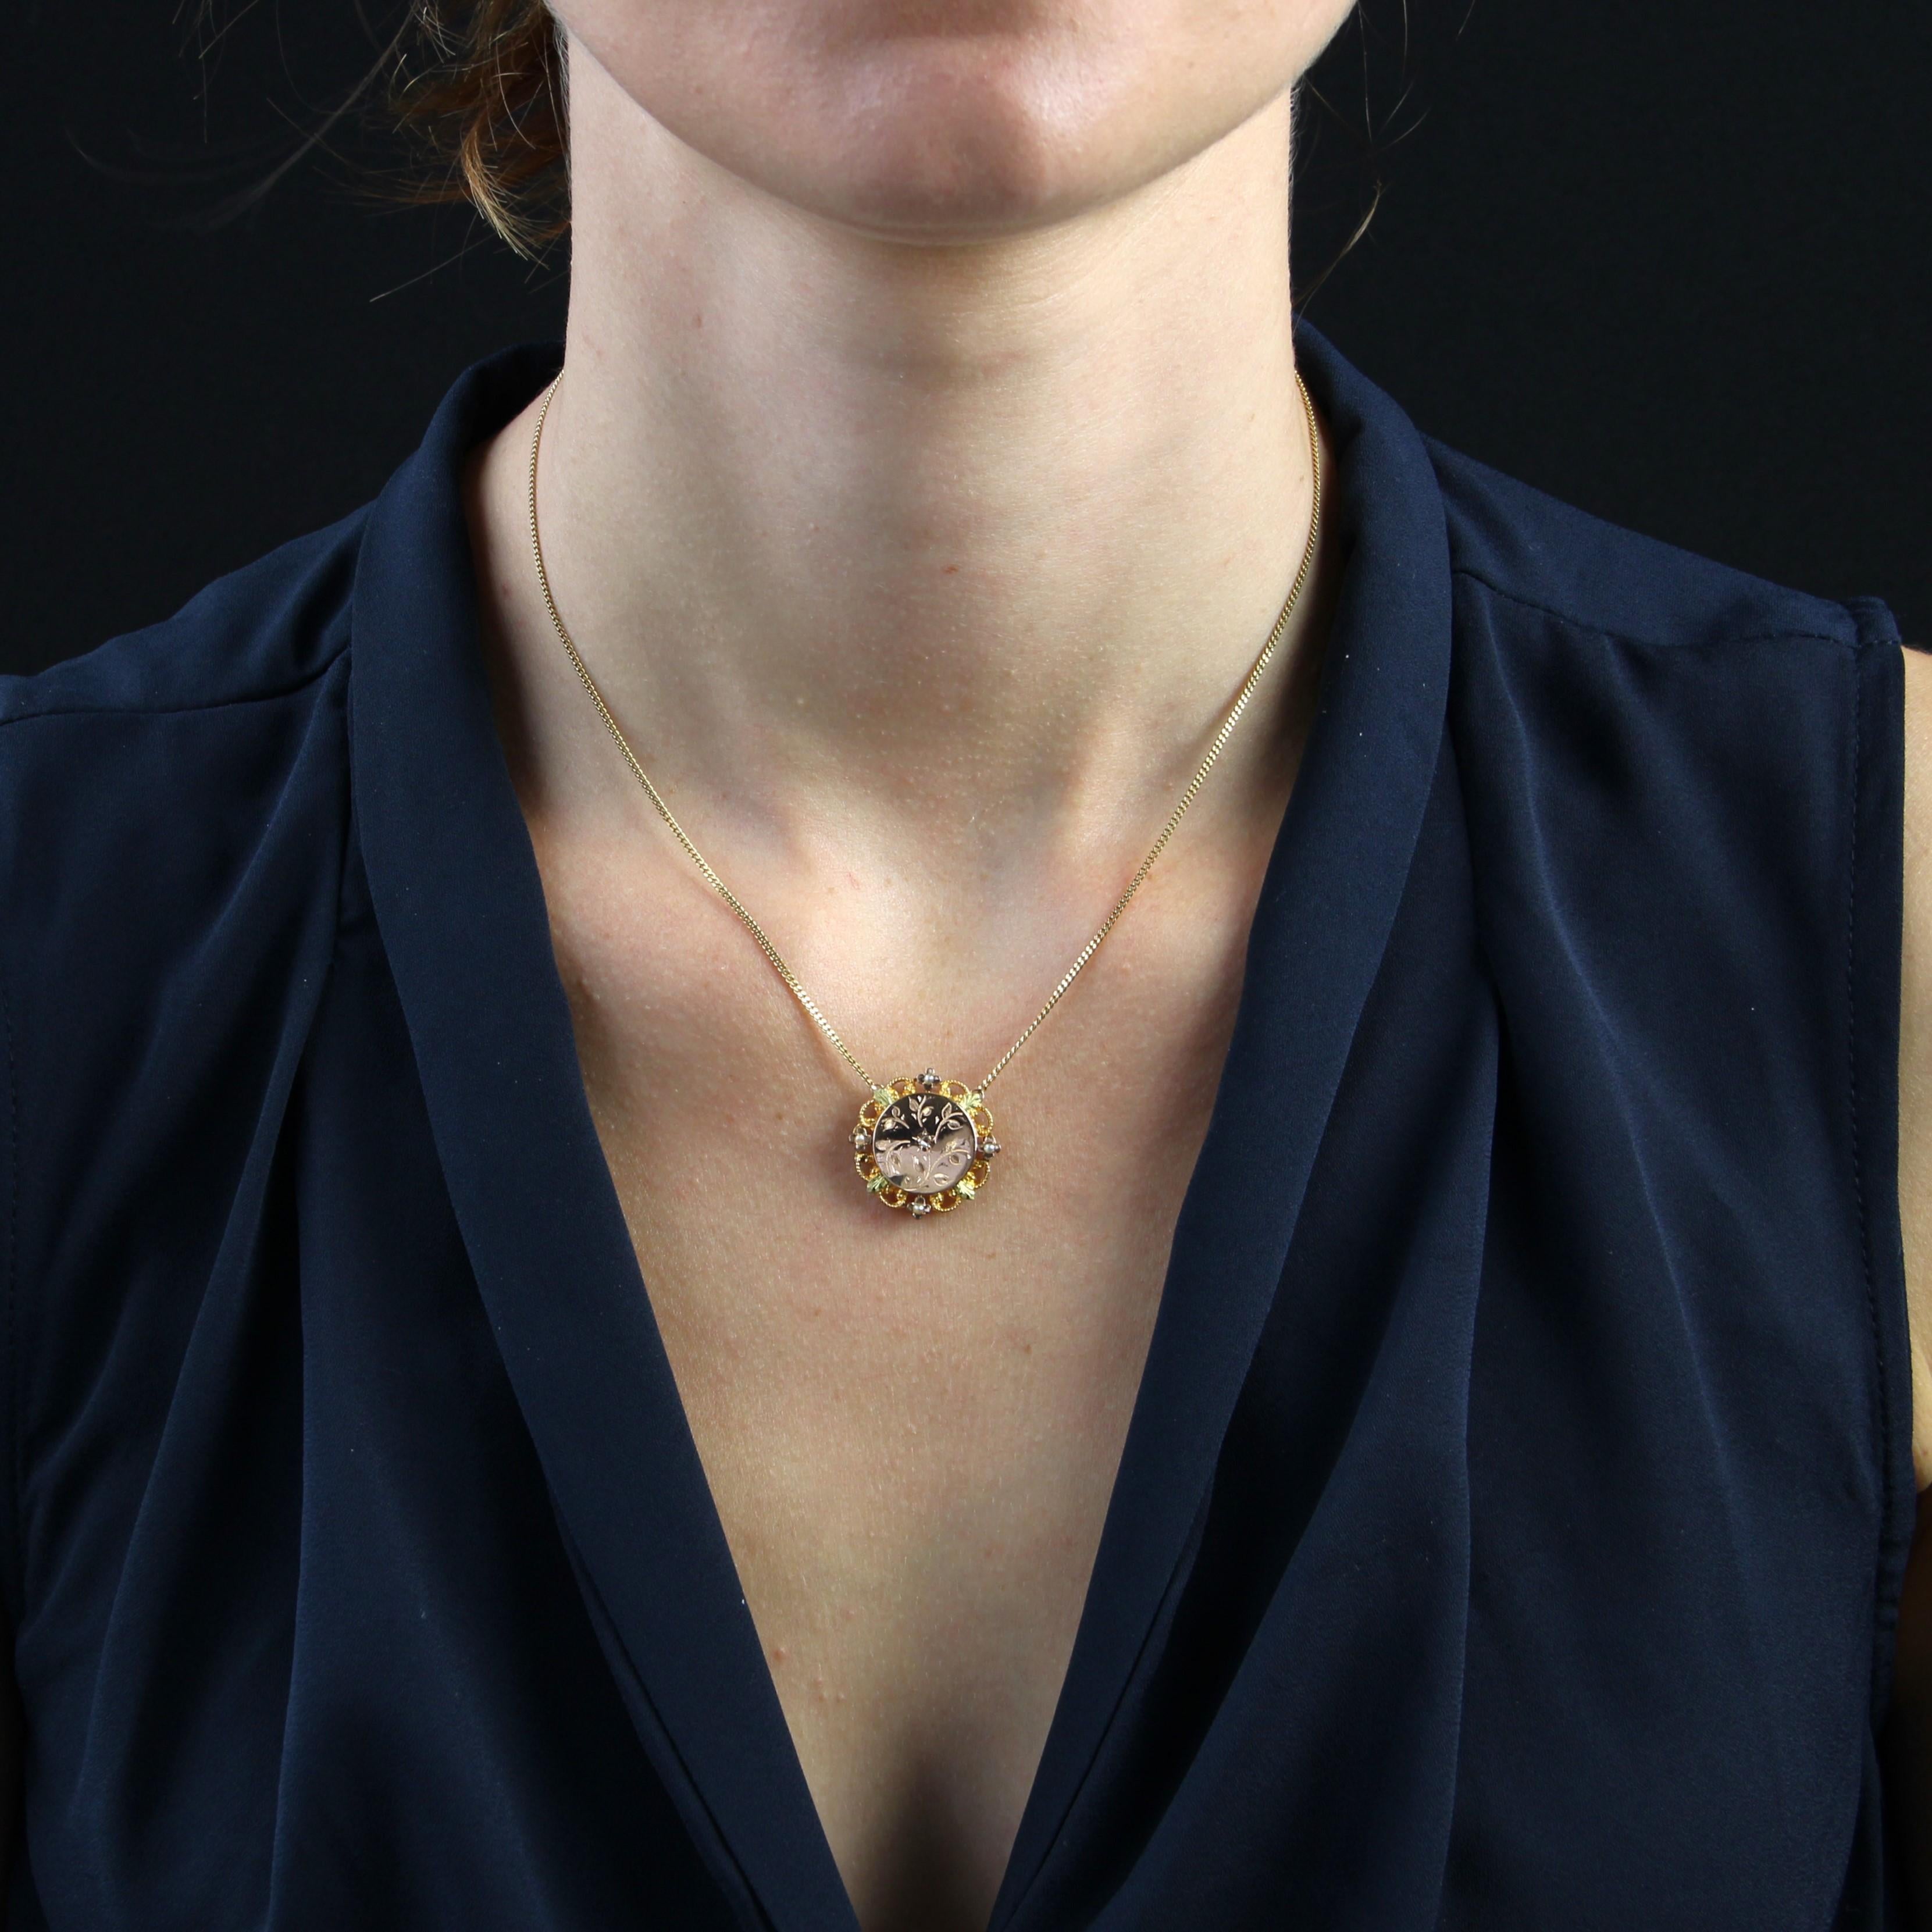 Halskette aus 18 Karat Gelb-, Rosé- und Grüngold.
Diese bezaubernde antike Halskette besteht aus einer feinen Gourmetkette, die mit einem Federring geschlossen wird und auf der Vorderseite ein dreifarbiges, durchbrochenes, rundes Goldmotiv trägt. Er